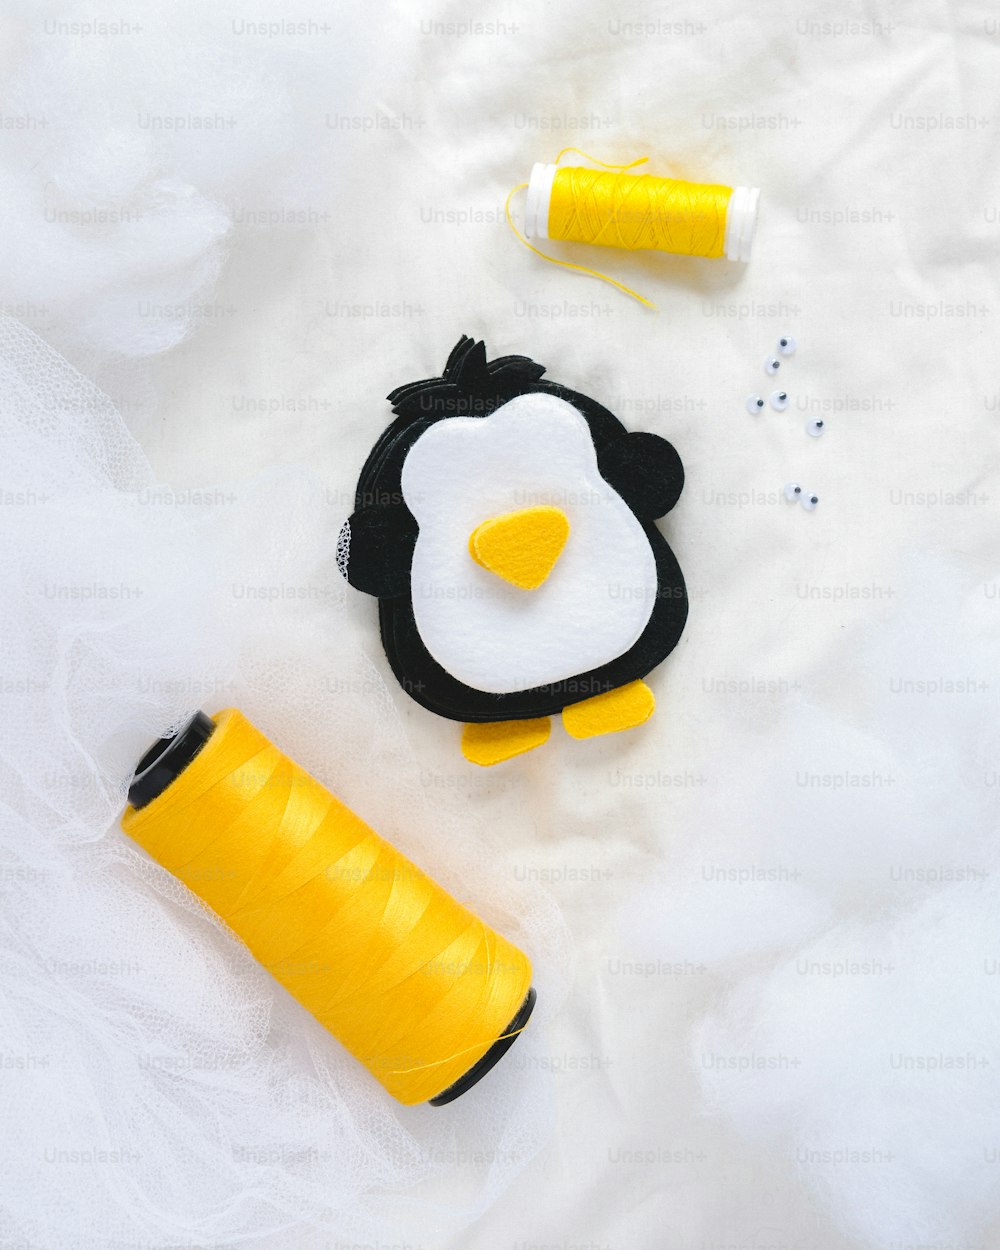 Un projet de couture avec un pingouin et une bobine de fil